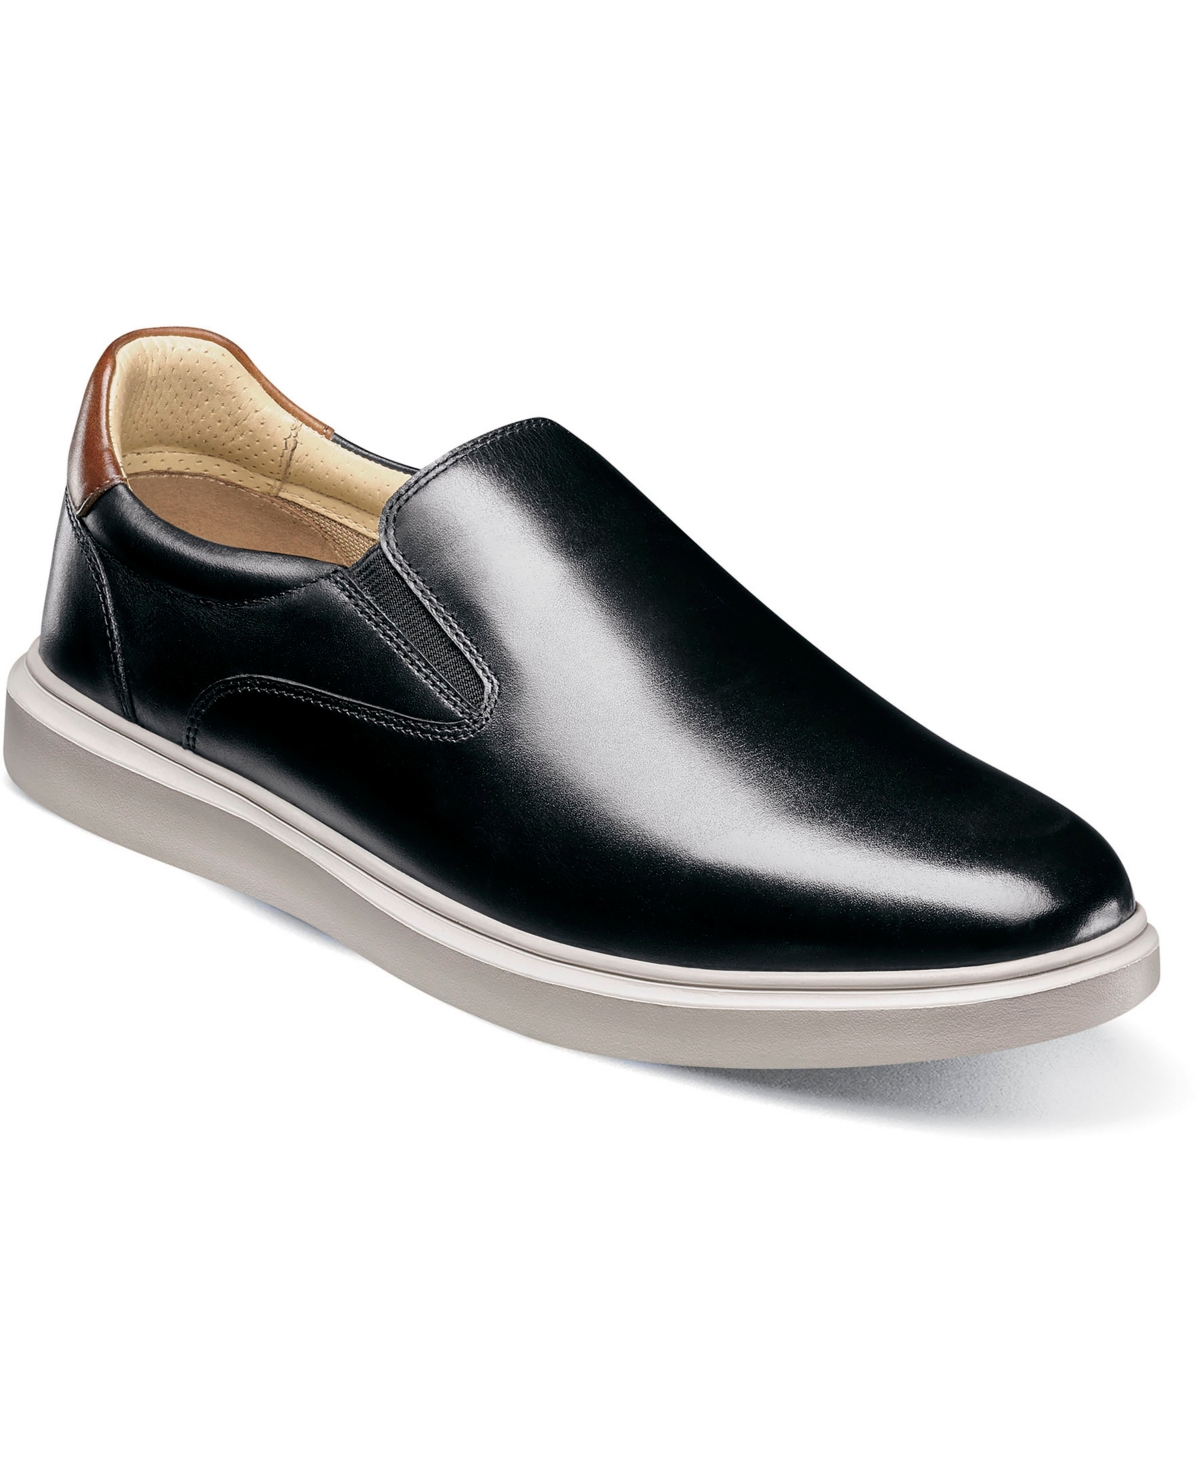 Men's Social Plain Toe Slip On Sneaker - Cognac Mlt